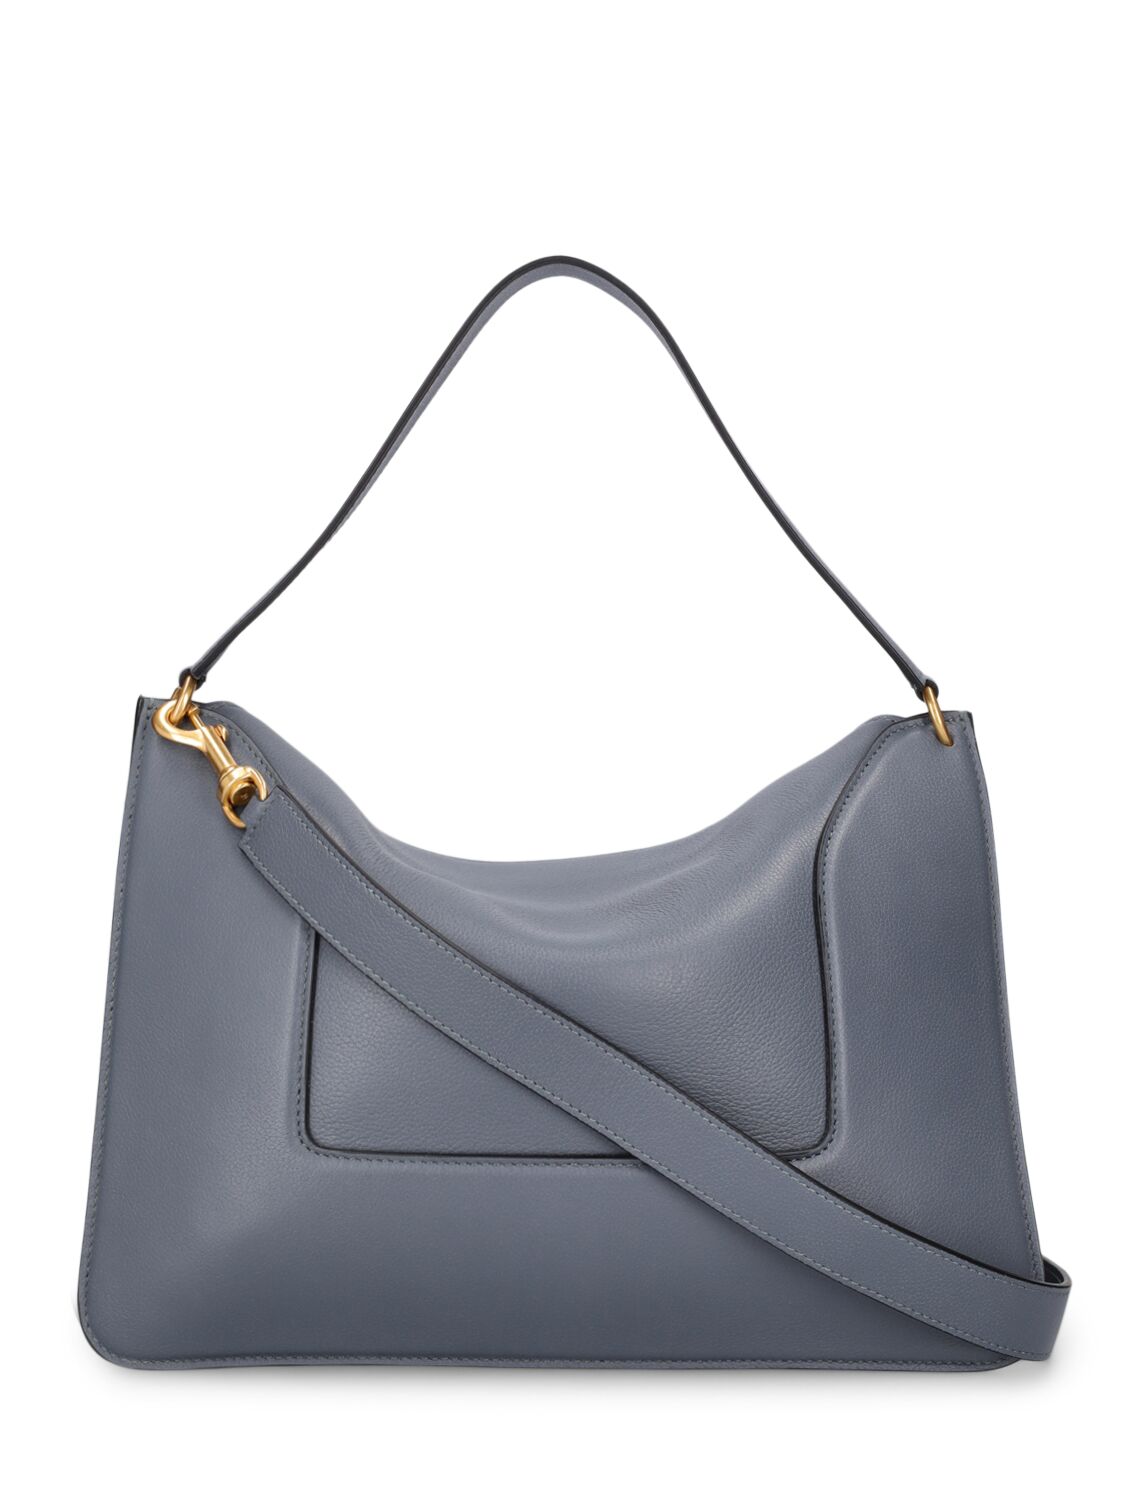 Shop Wandler Big Penelope Leather Shoulder Bag In Charcoal Crust